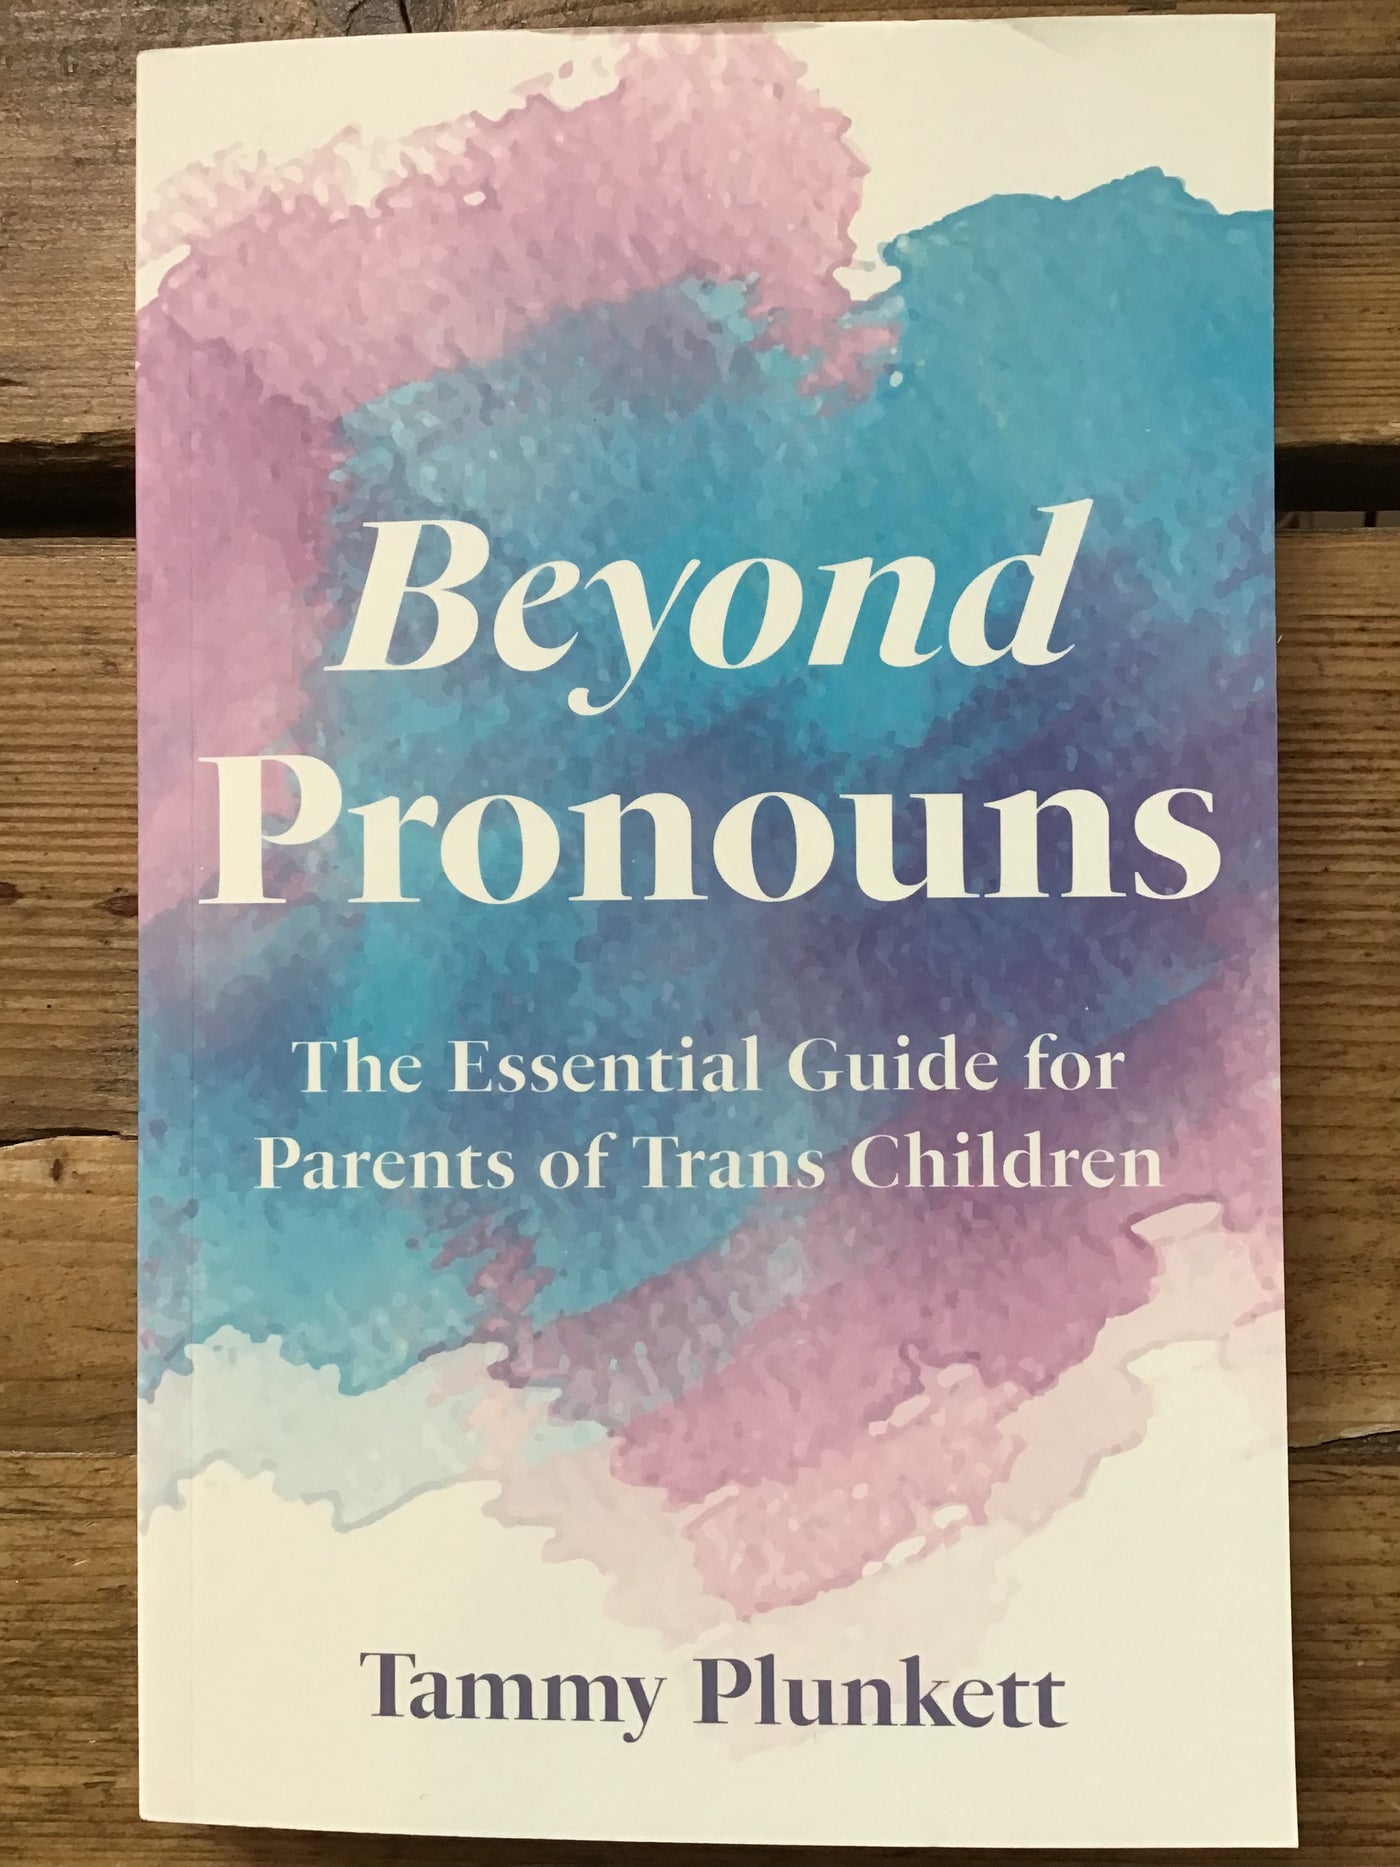 Beyond Pronouns